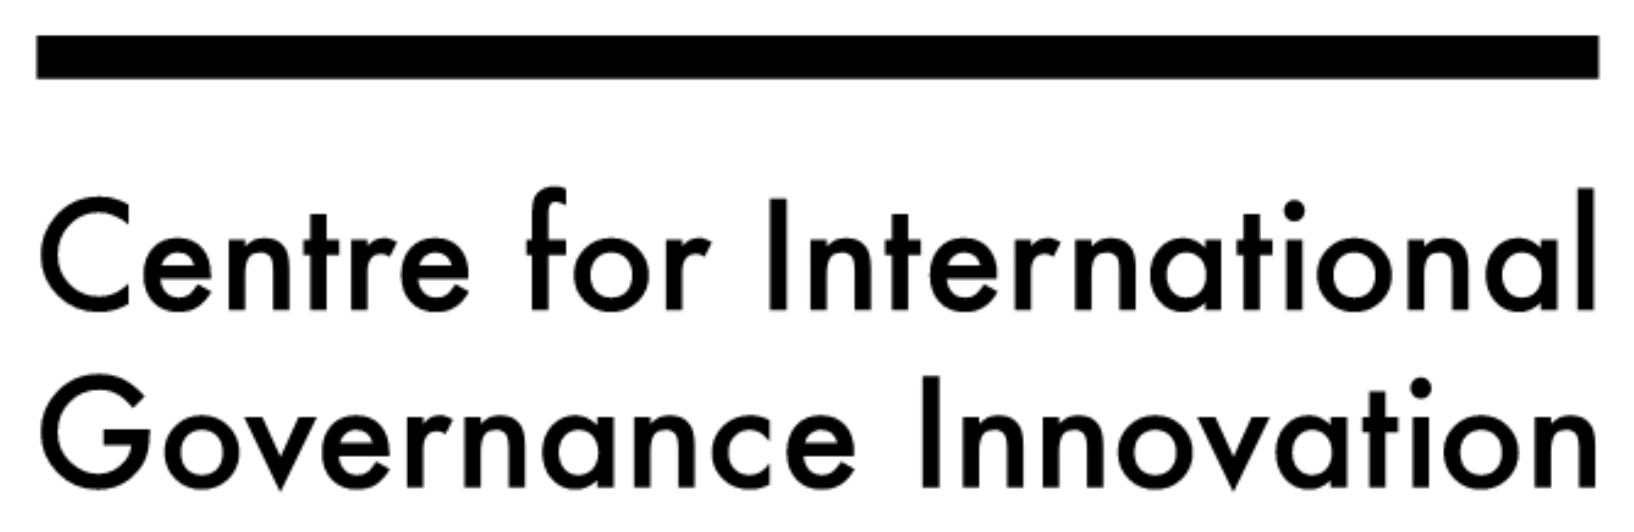 Centre for International Governance Innovation logo